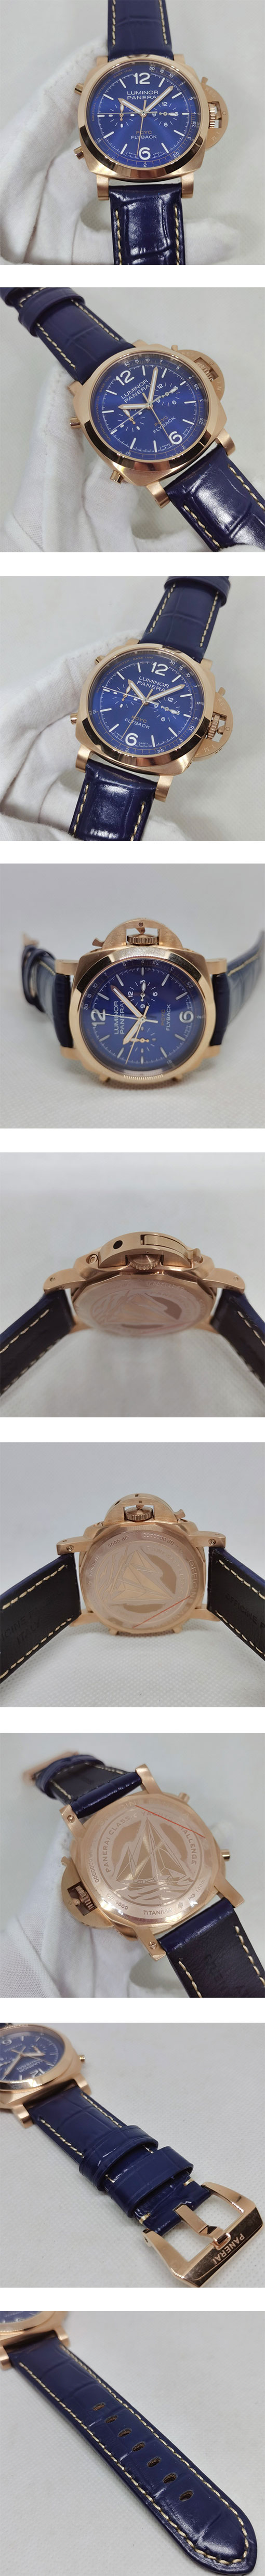 パネライコピー時計は価格性能比が高いです! PAM01020 ルミノール ヨット チャレンジ 44mm